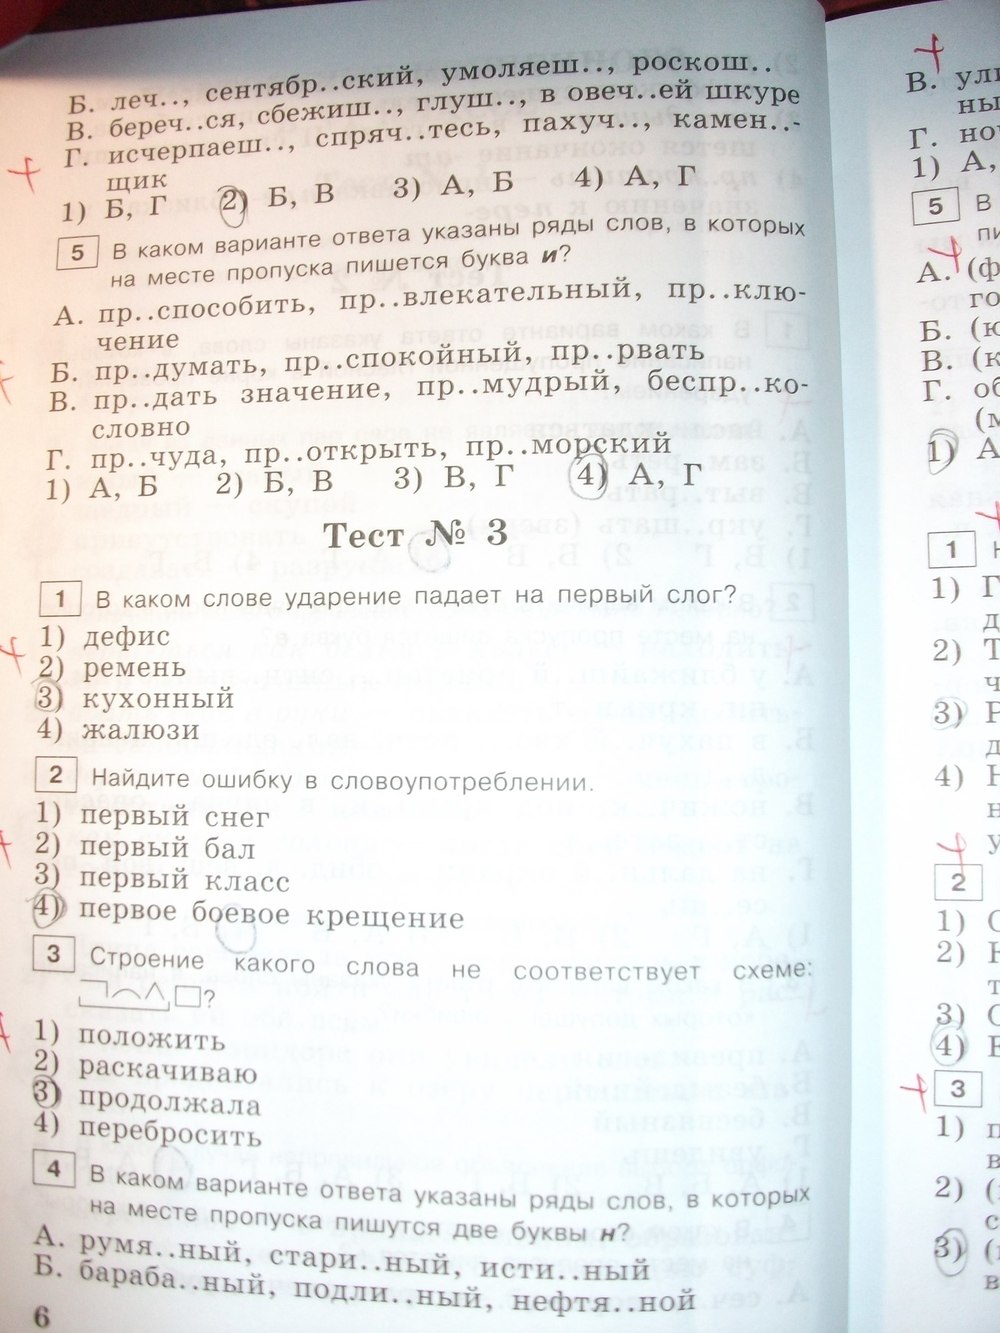 Гдз на тетрадь по русскому языку за 8 класс автор г.а богданова